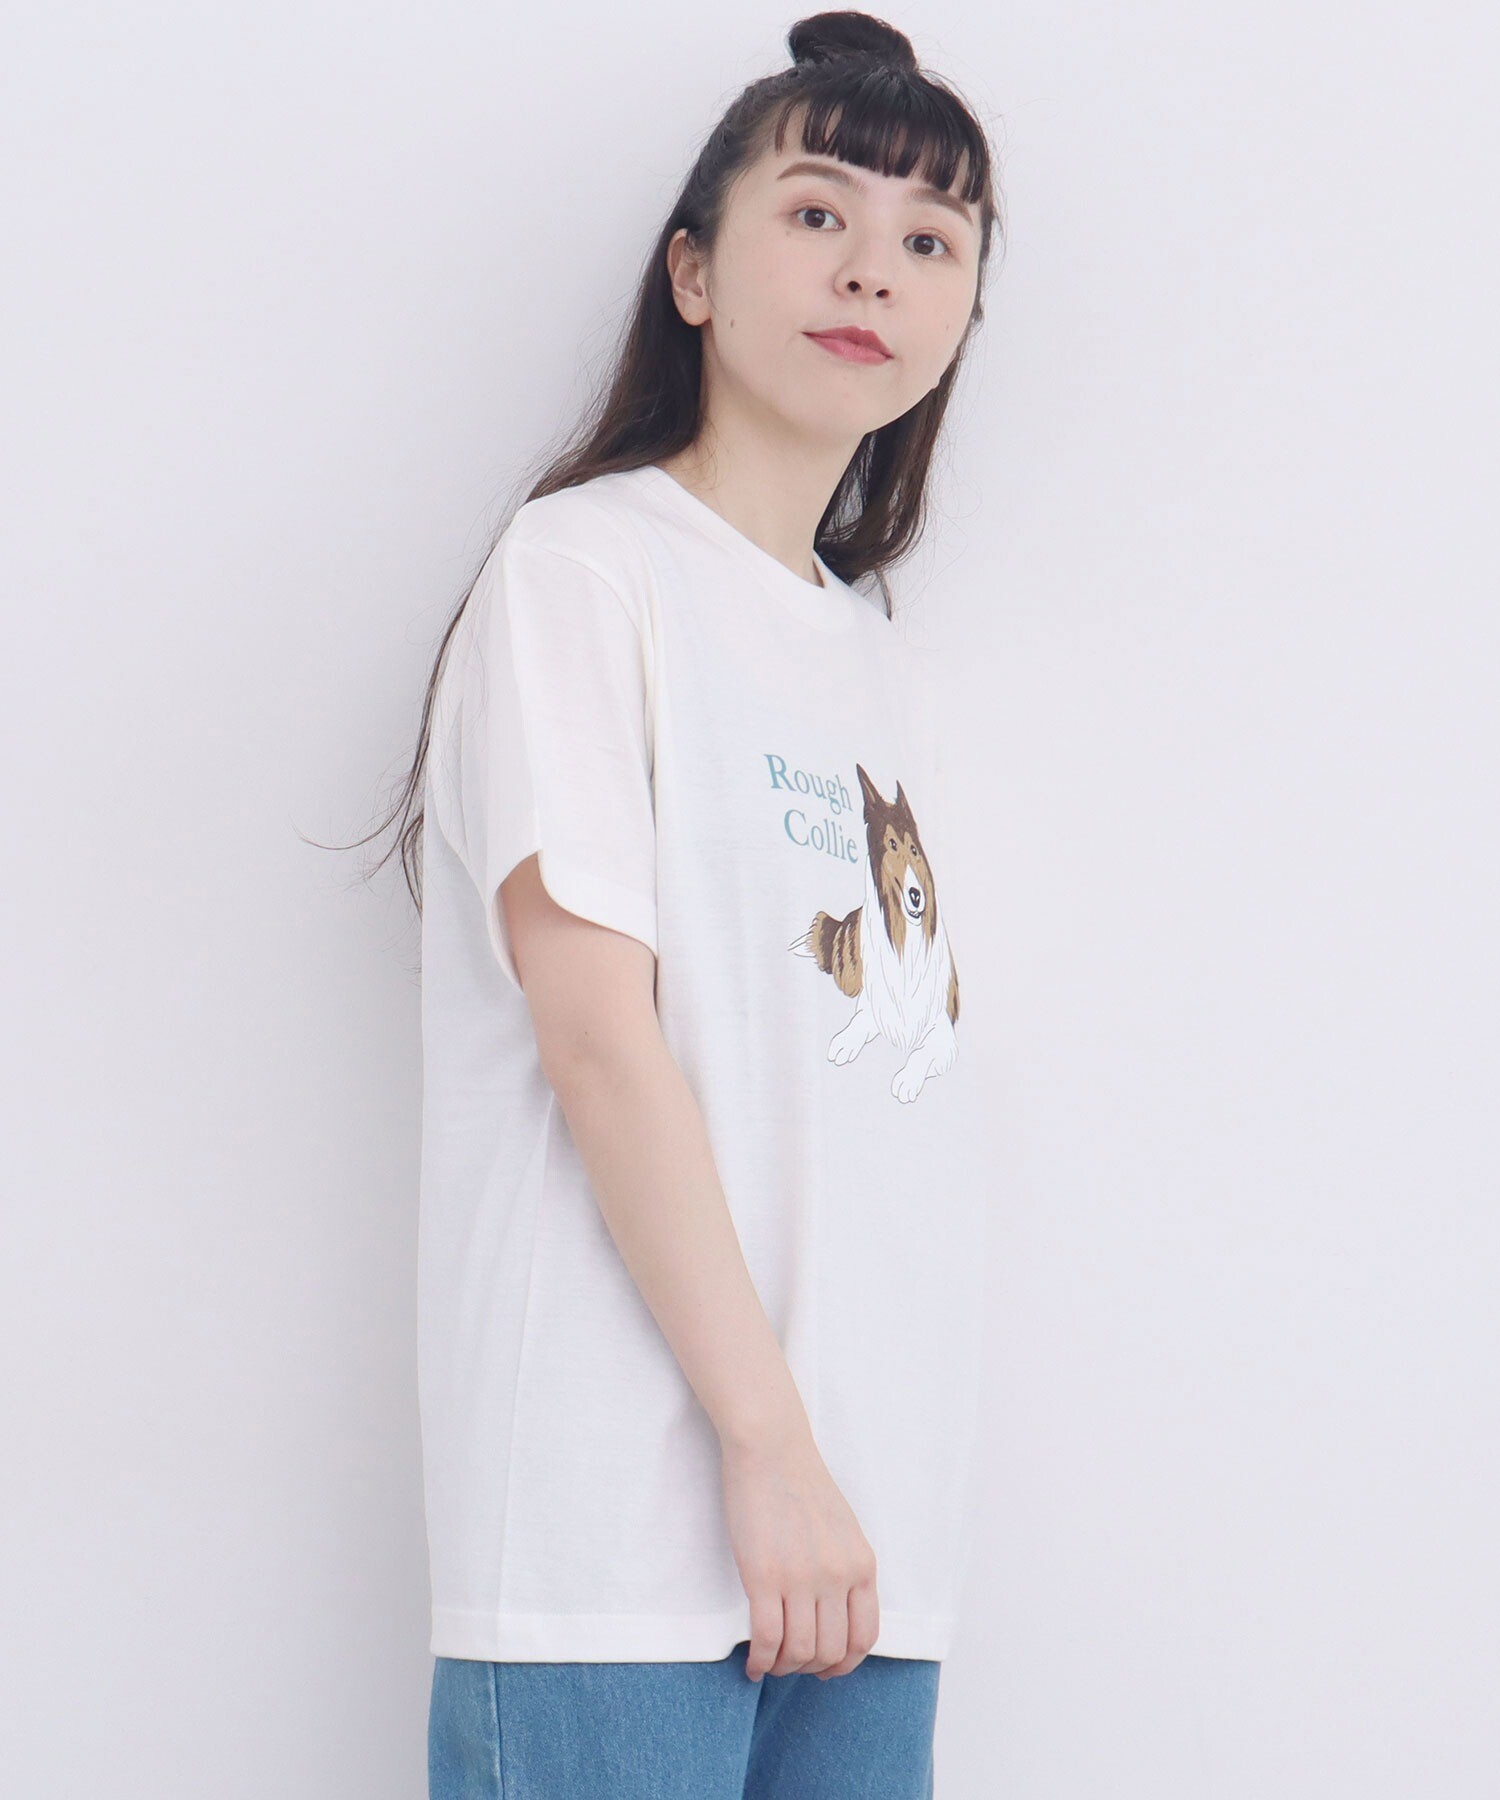 AMBIDEX Store 【予約販売】○ラフコリー プリント Tシャツ(F シロ): l 